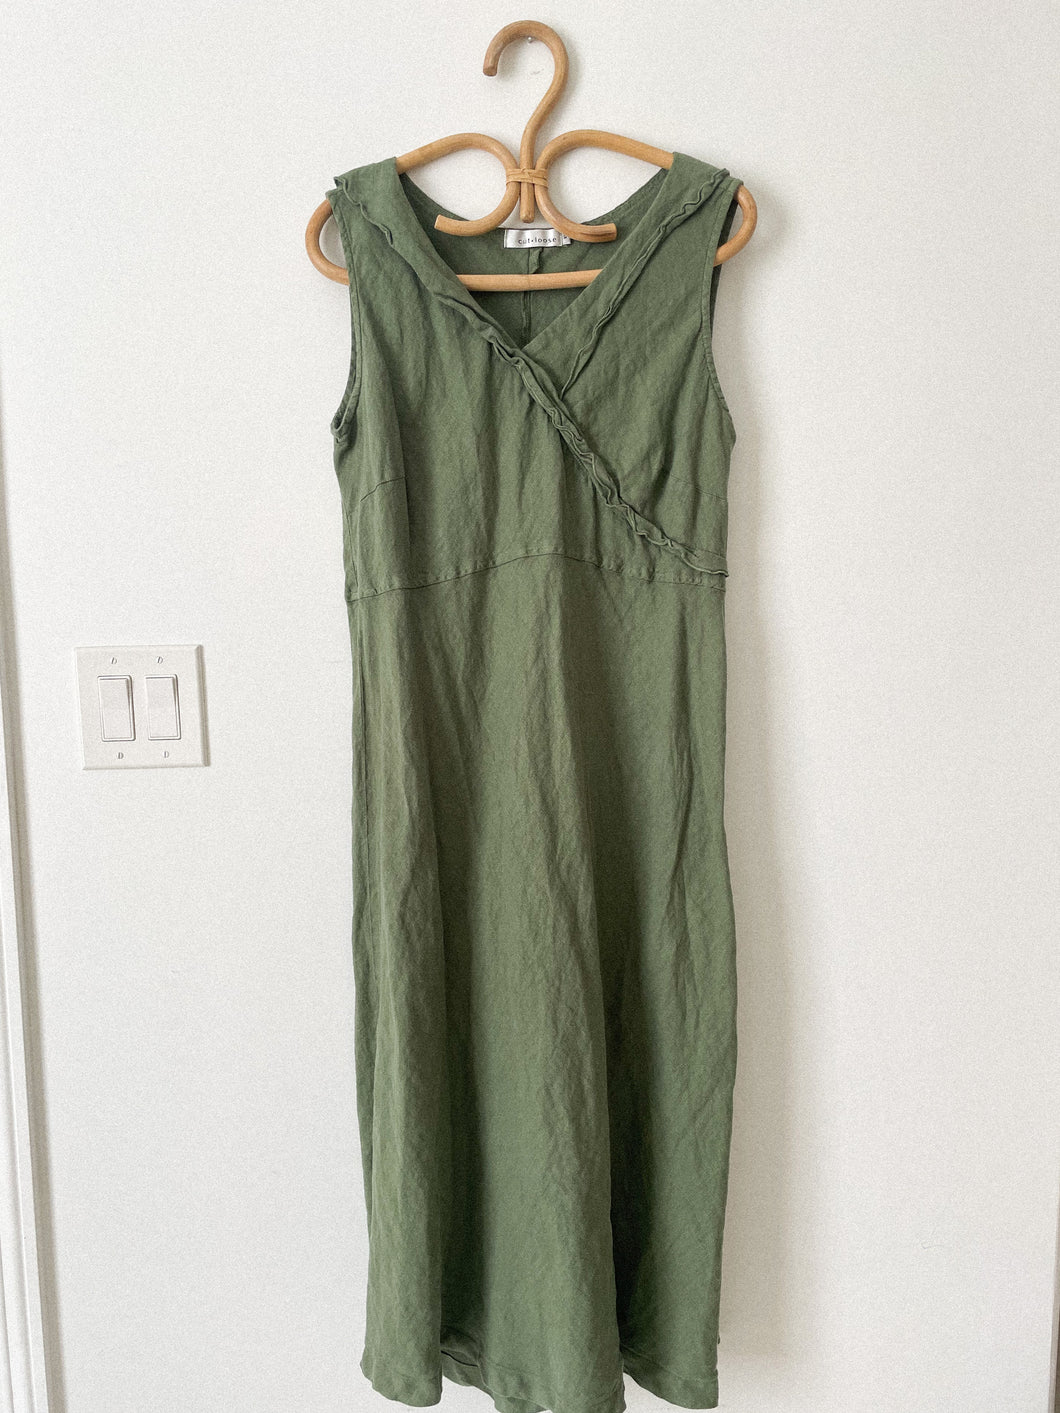 100% Linen Forest Green Dress